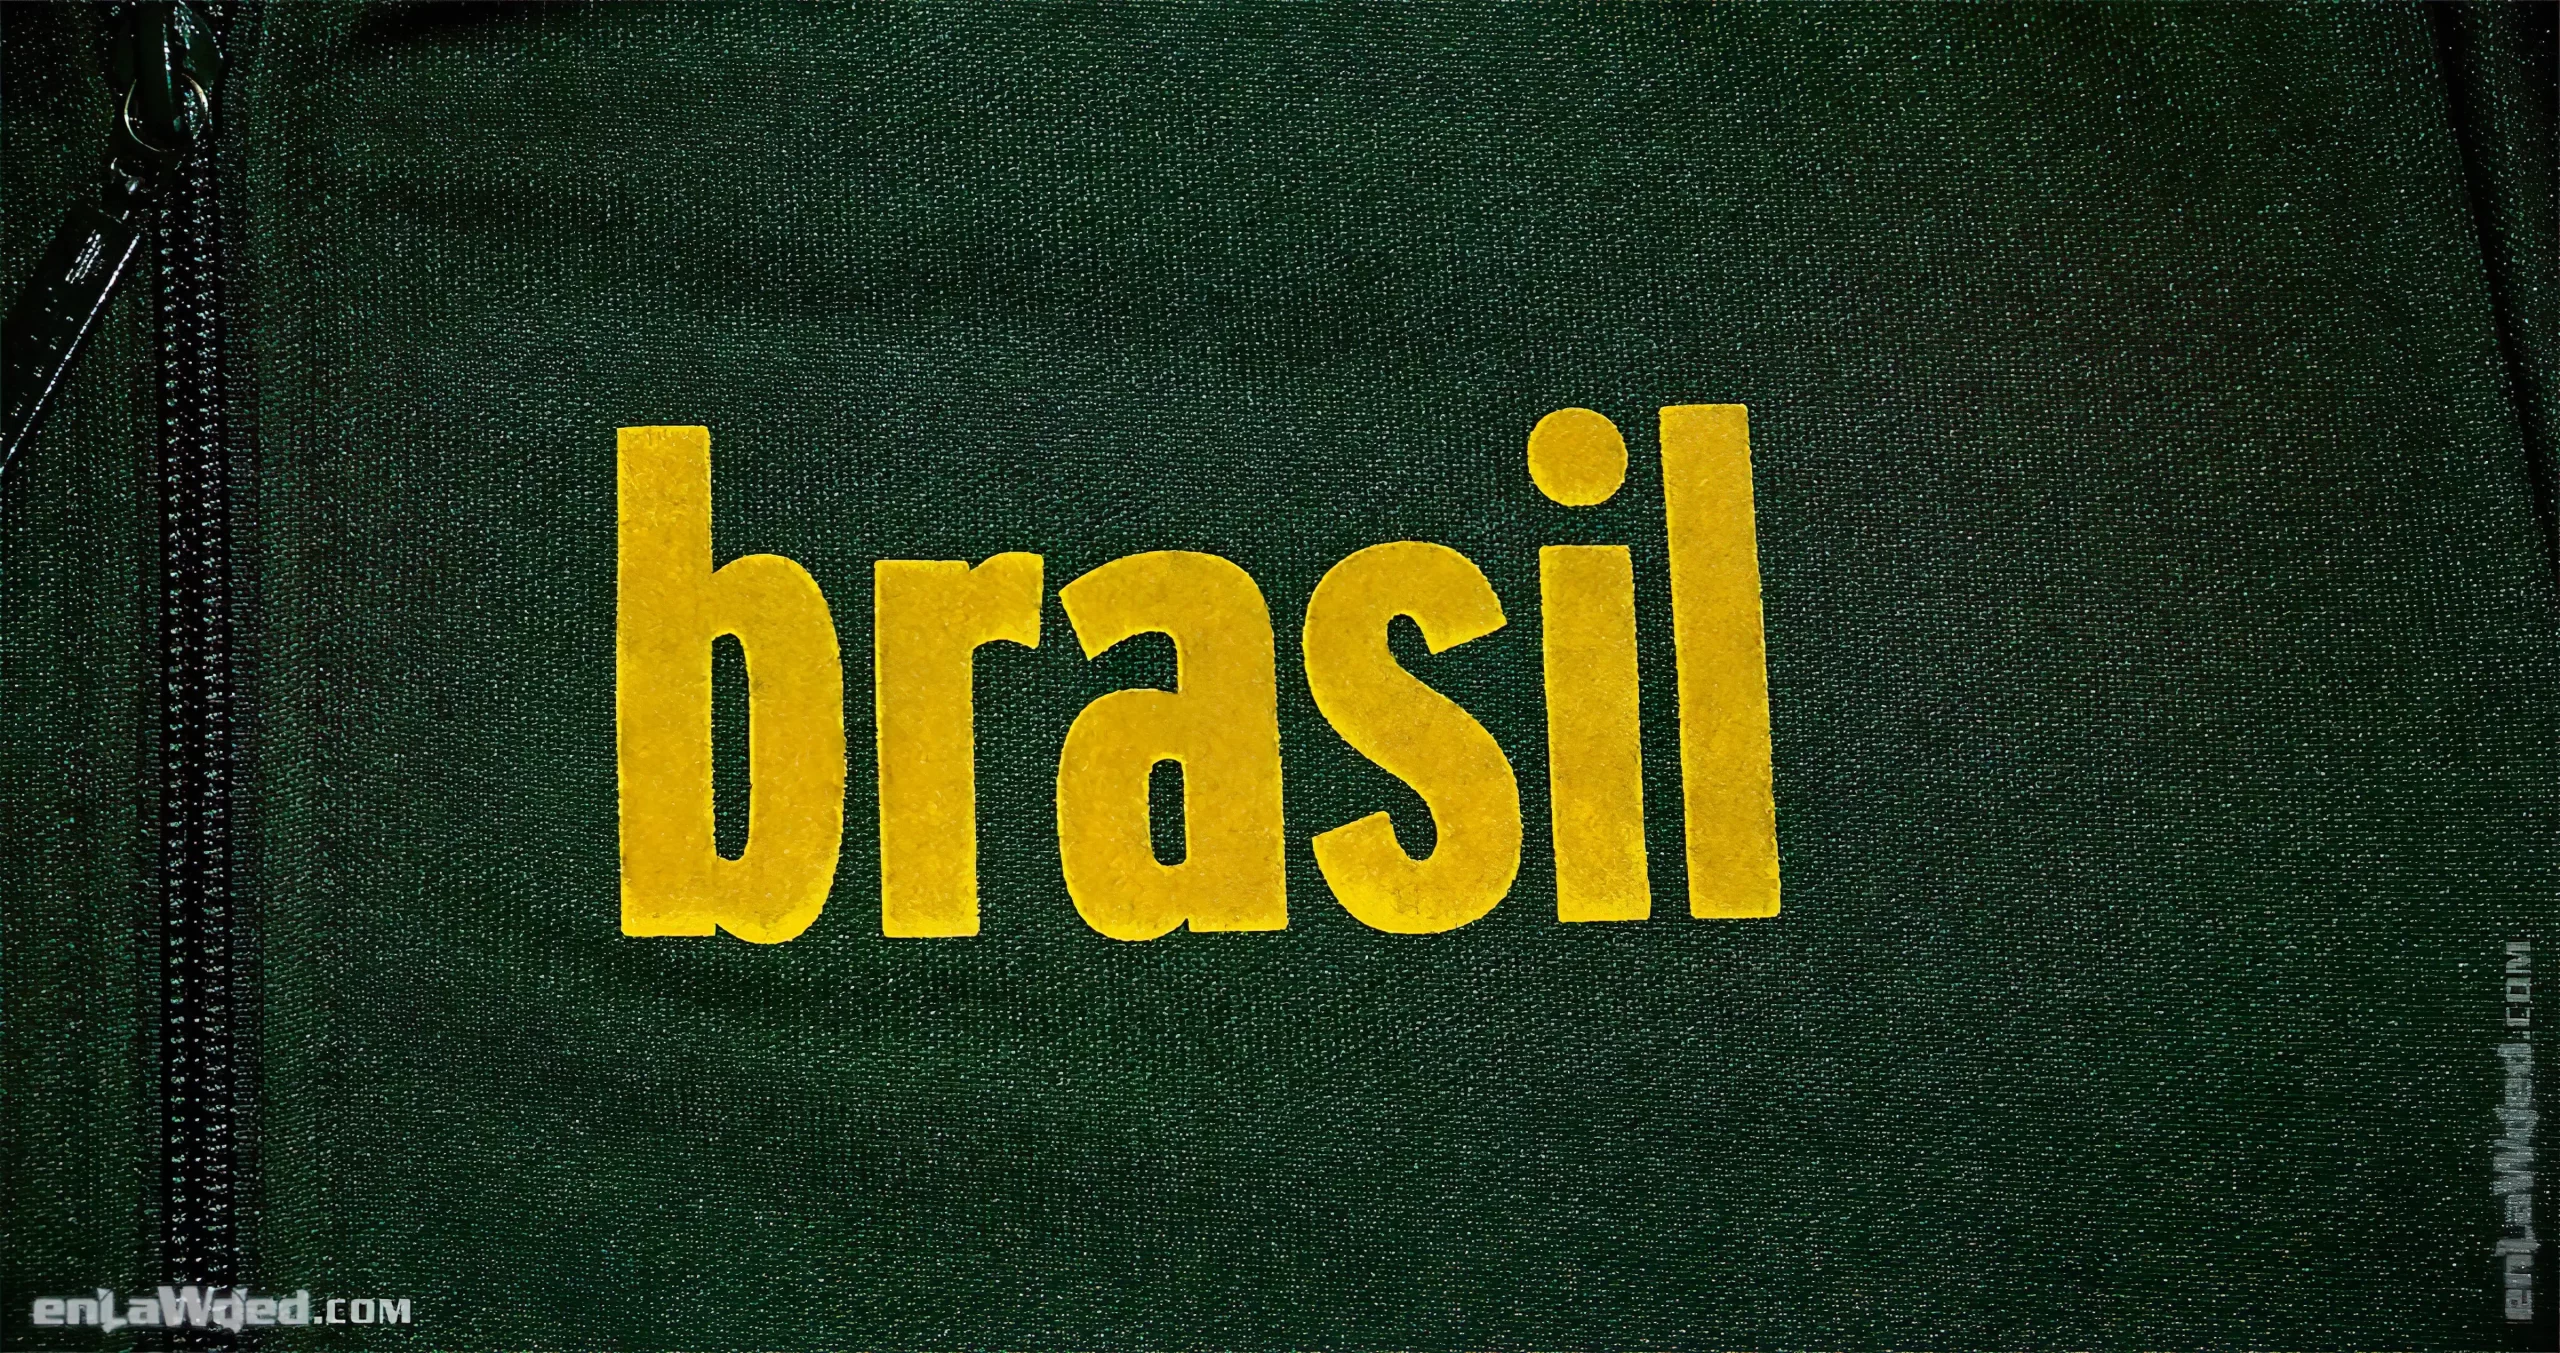 Men’s 2006 Brasil ’70 Track Top by Adidas Originals: Remarkable (EnLawded.com file #lmchk90244ip2y121993kg9st)